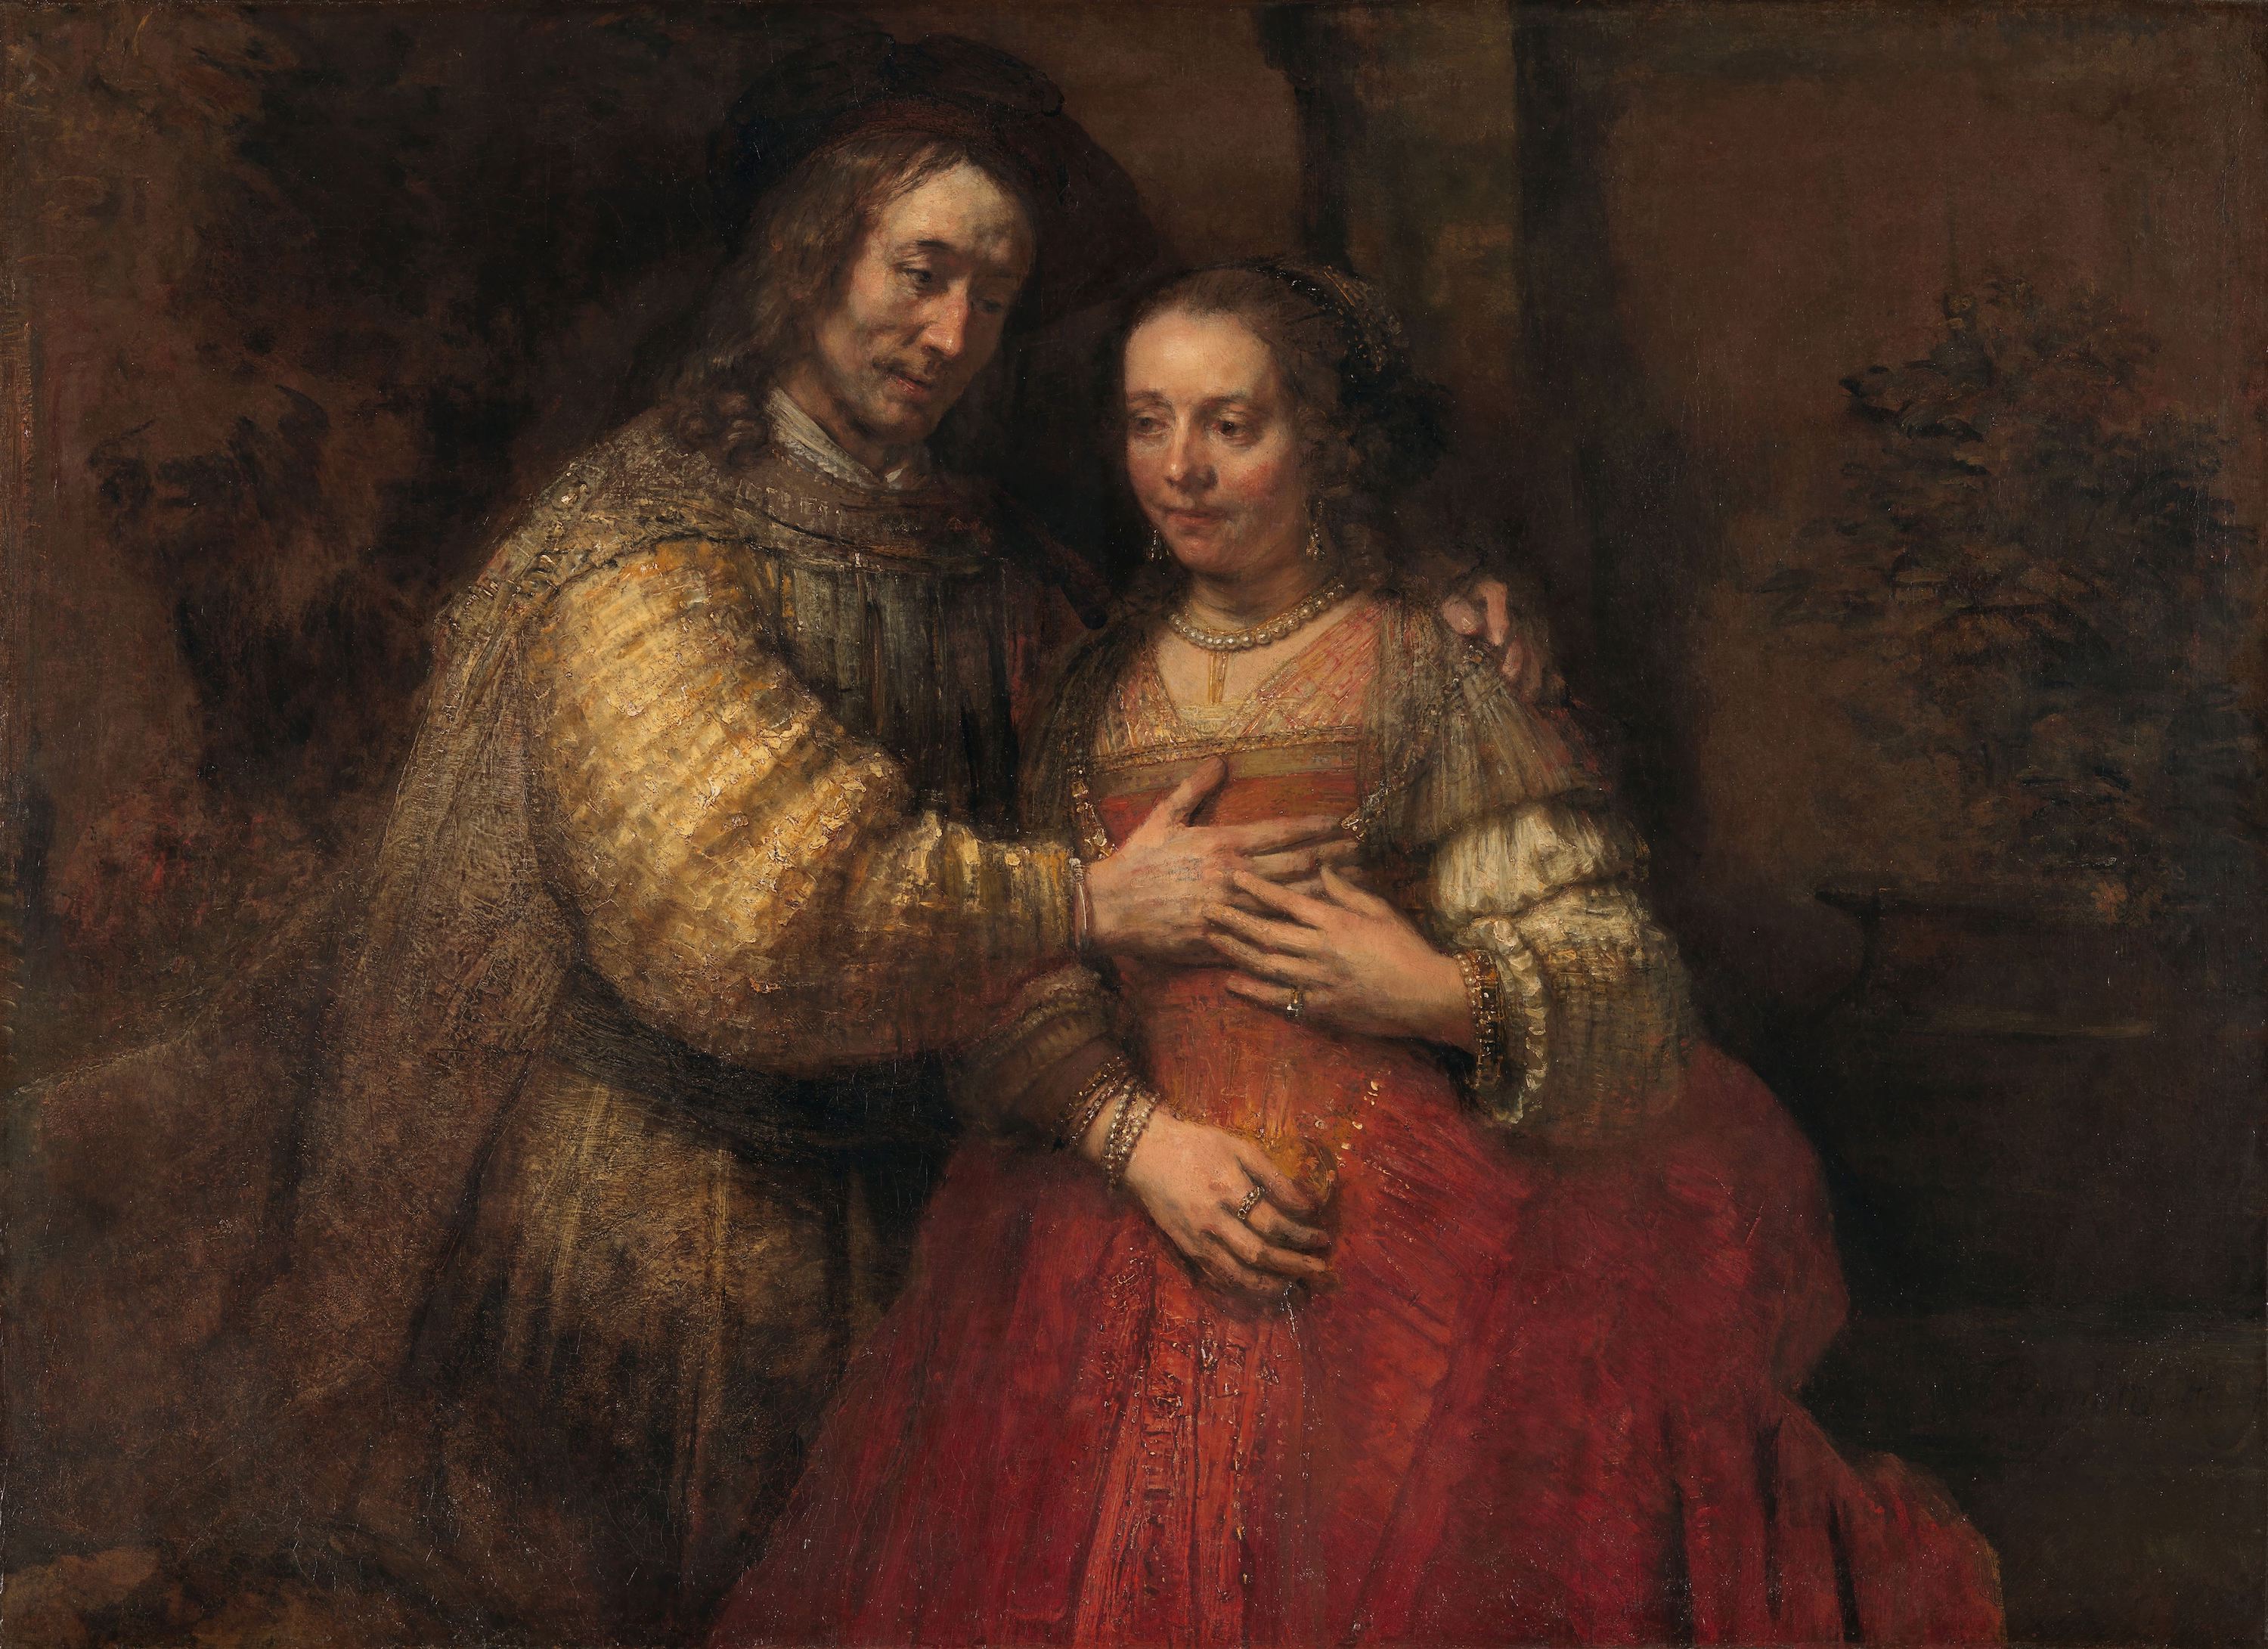 Yahudi Gelin by Rembrandt van Rijn - c. 1665 - c. 1669 Europeana